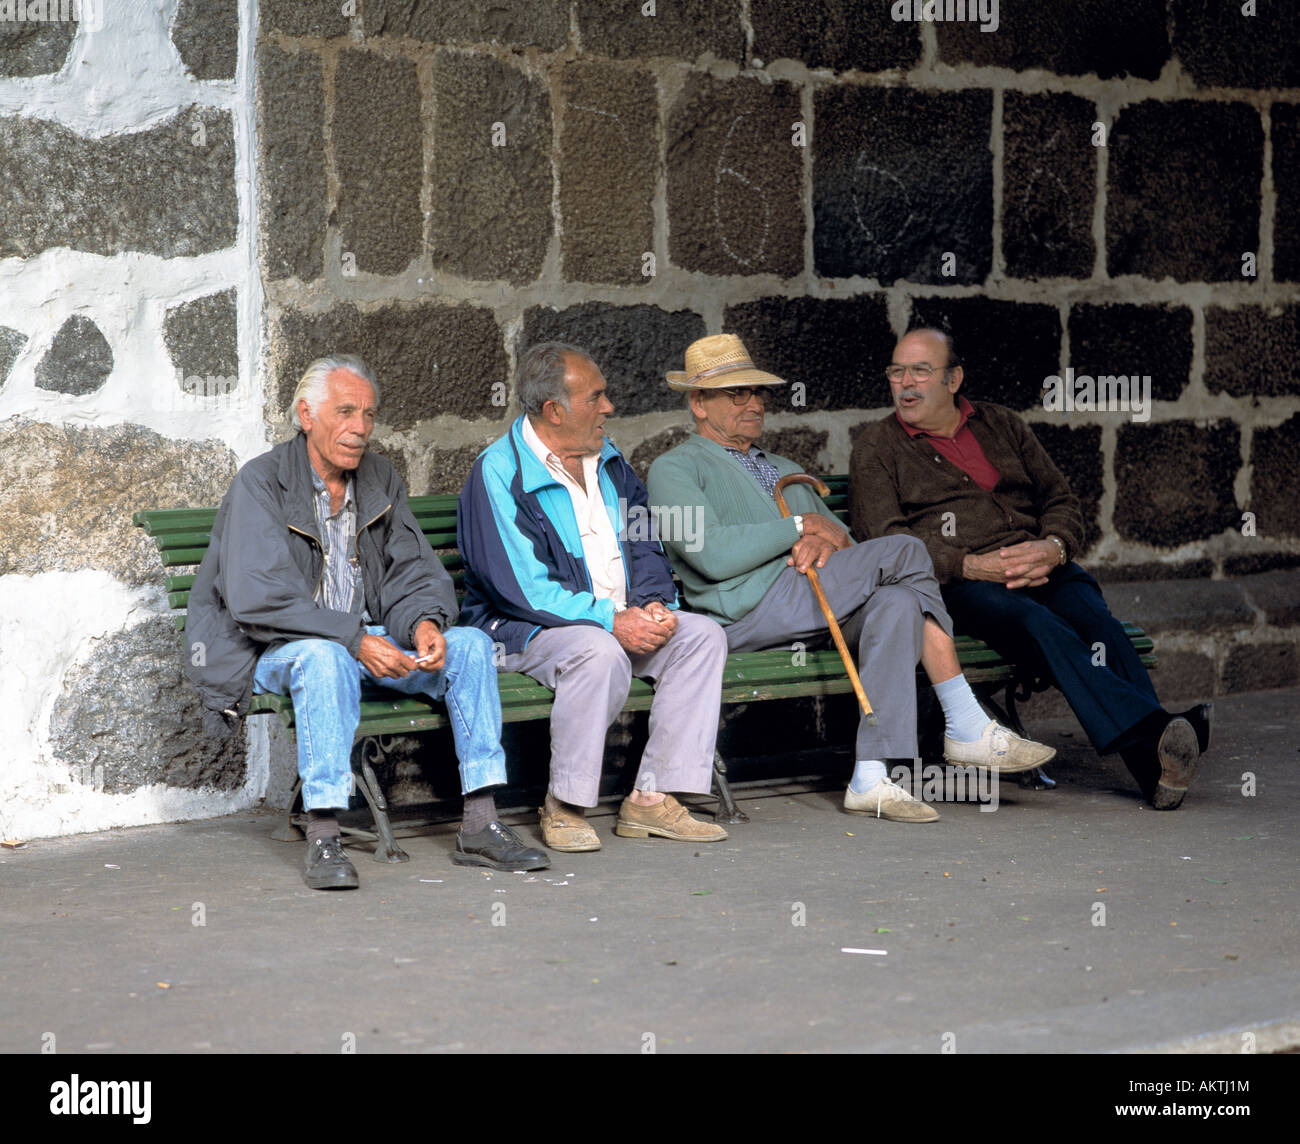 Spanien, Kanarische Inseln, La Palma, Rede, Gespräch, Diskussion, Rentner, Senioren, einheimische, vier ältere Männer sitzen auf einer Bank vor einer Felswand im Gespräch Stockfoto